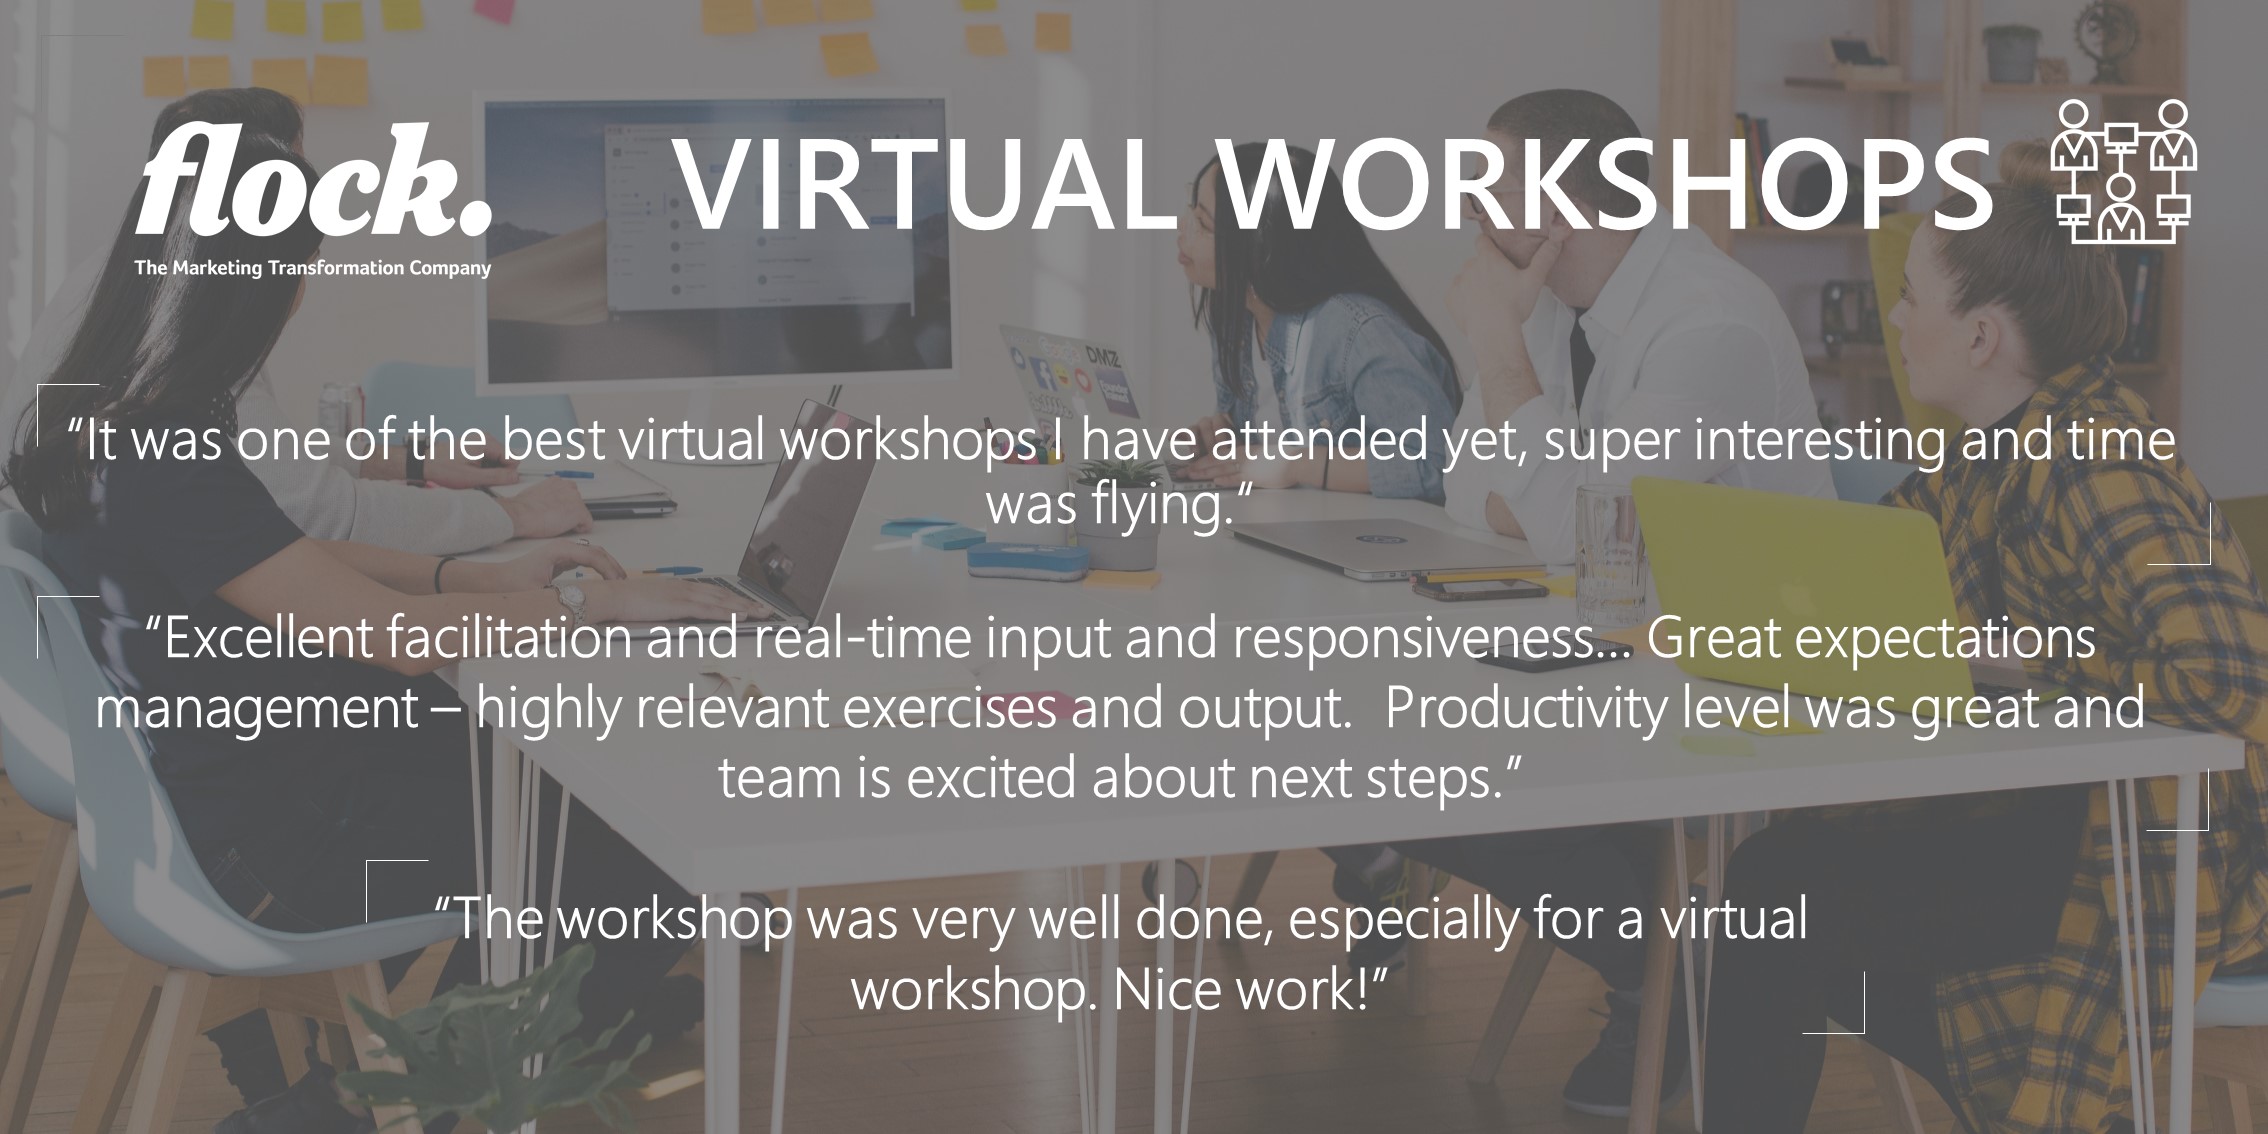 Flock Virtual Workshops